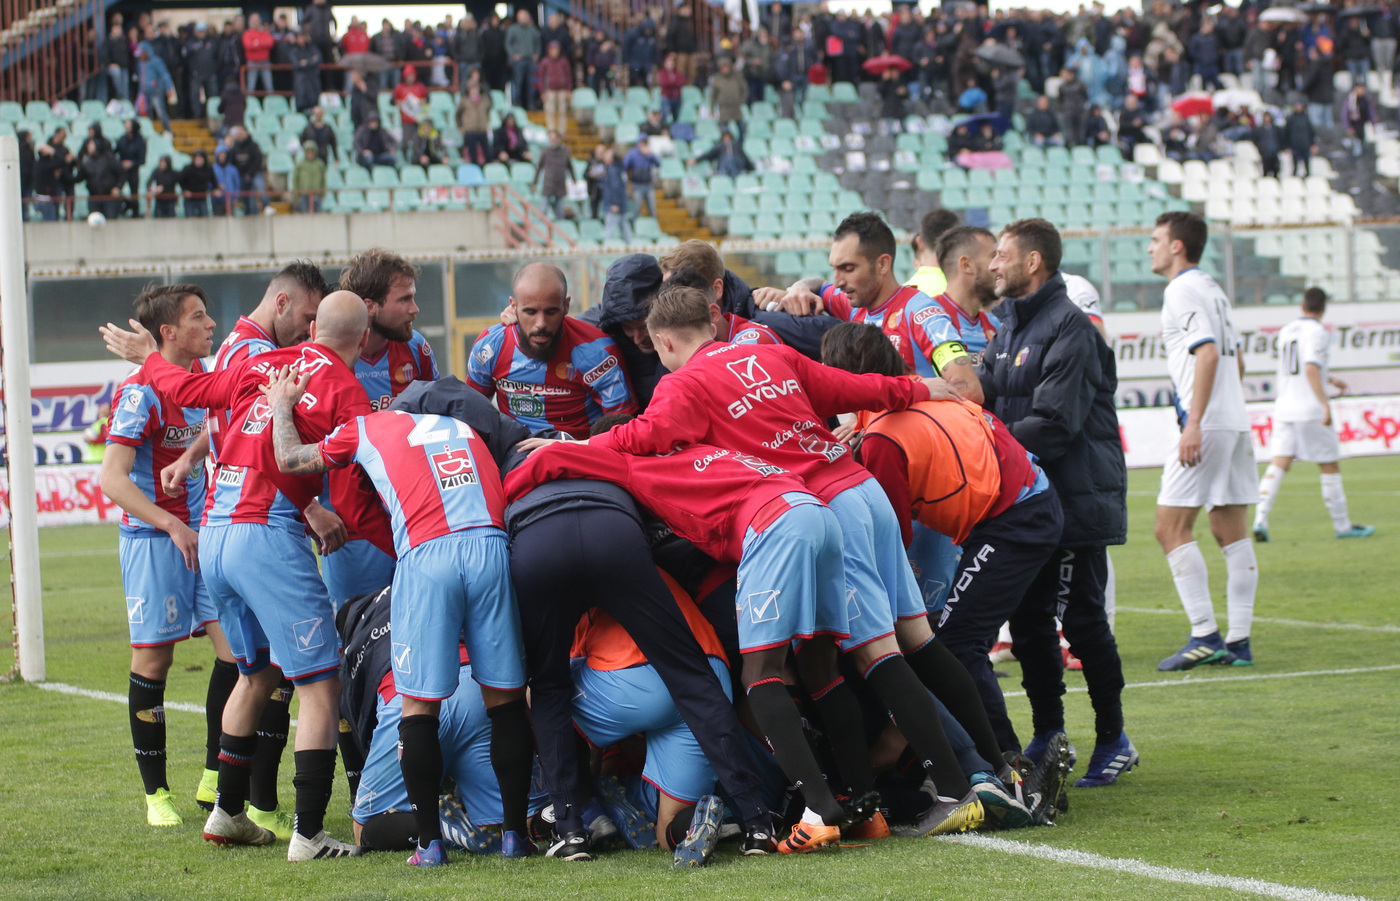 Catania-Trapani 29 maggio: si gioca per il secondo turno dei play-off nazionali di Serie C. I rossazzurri devono vincere in casa.